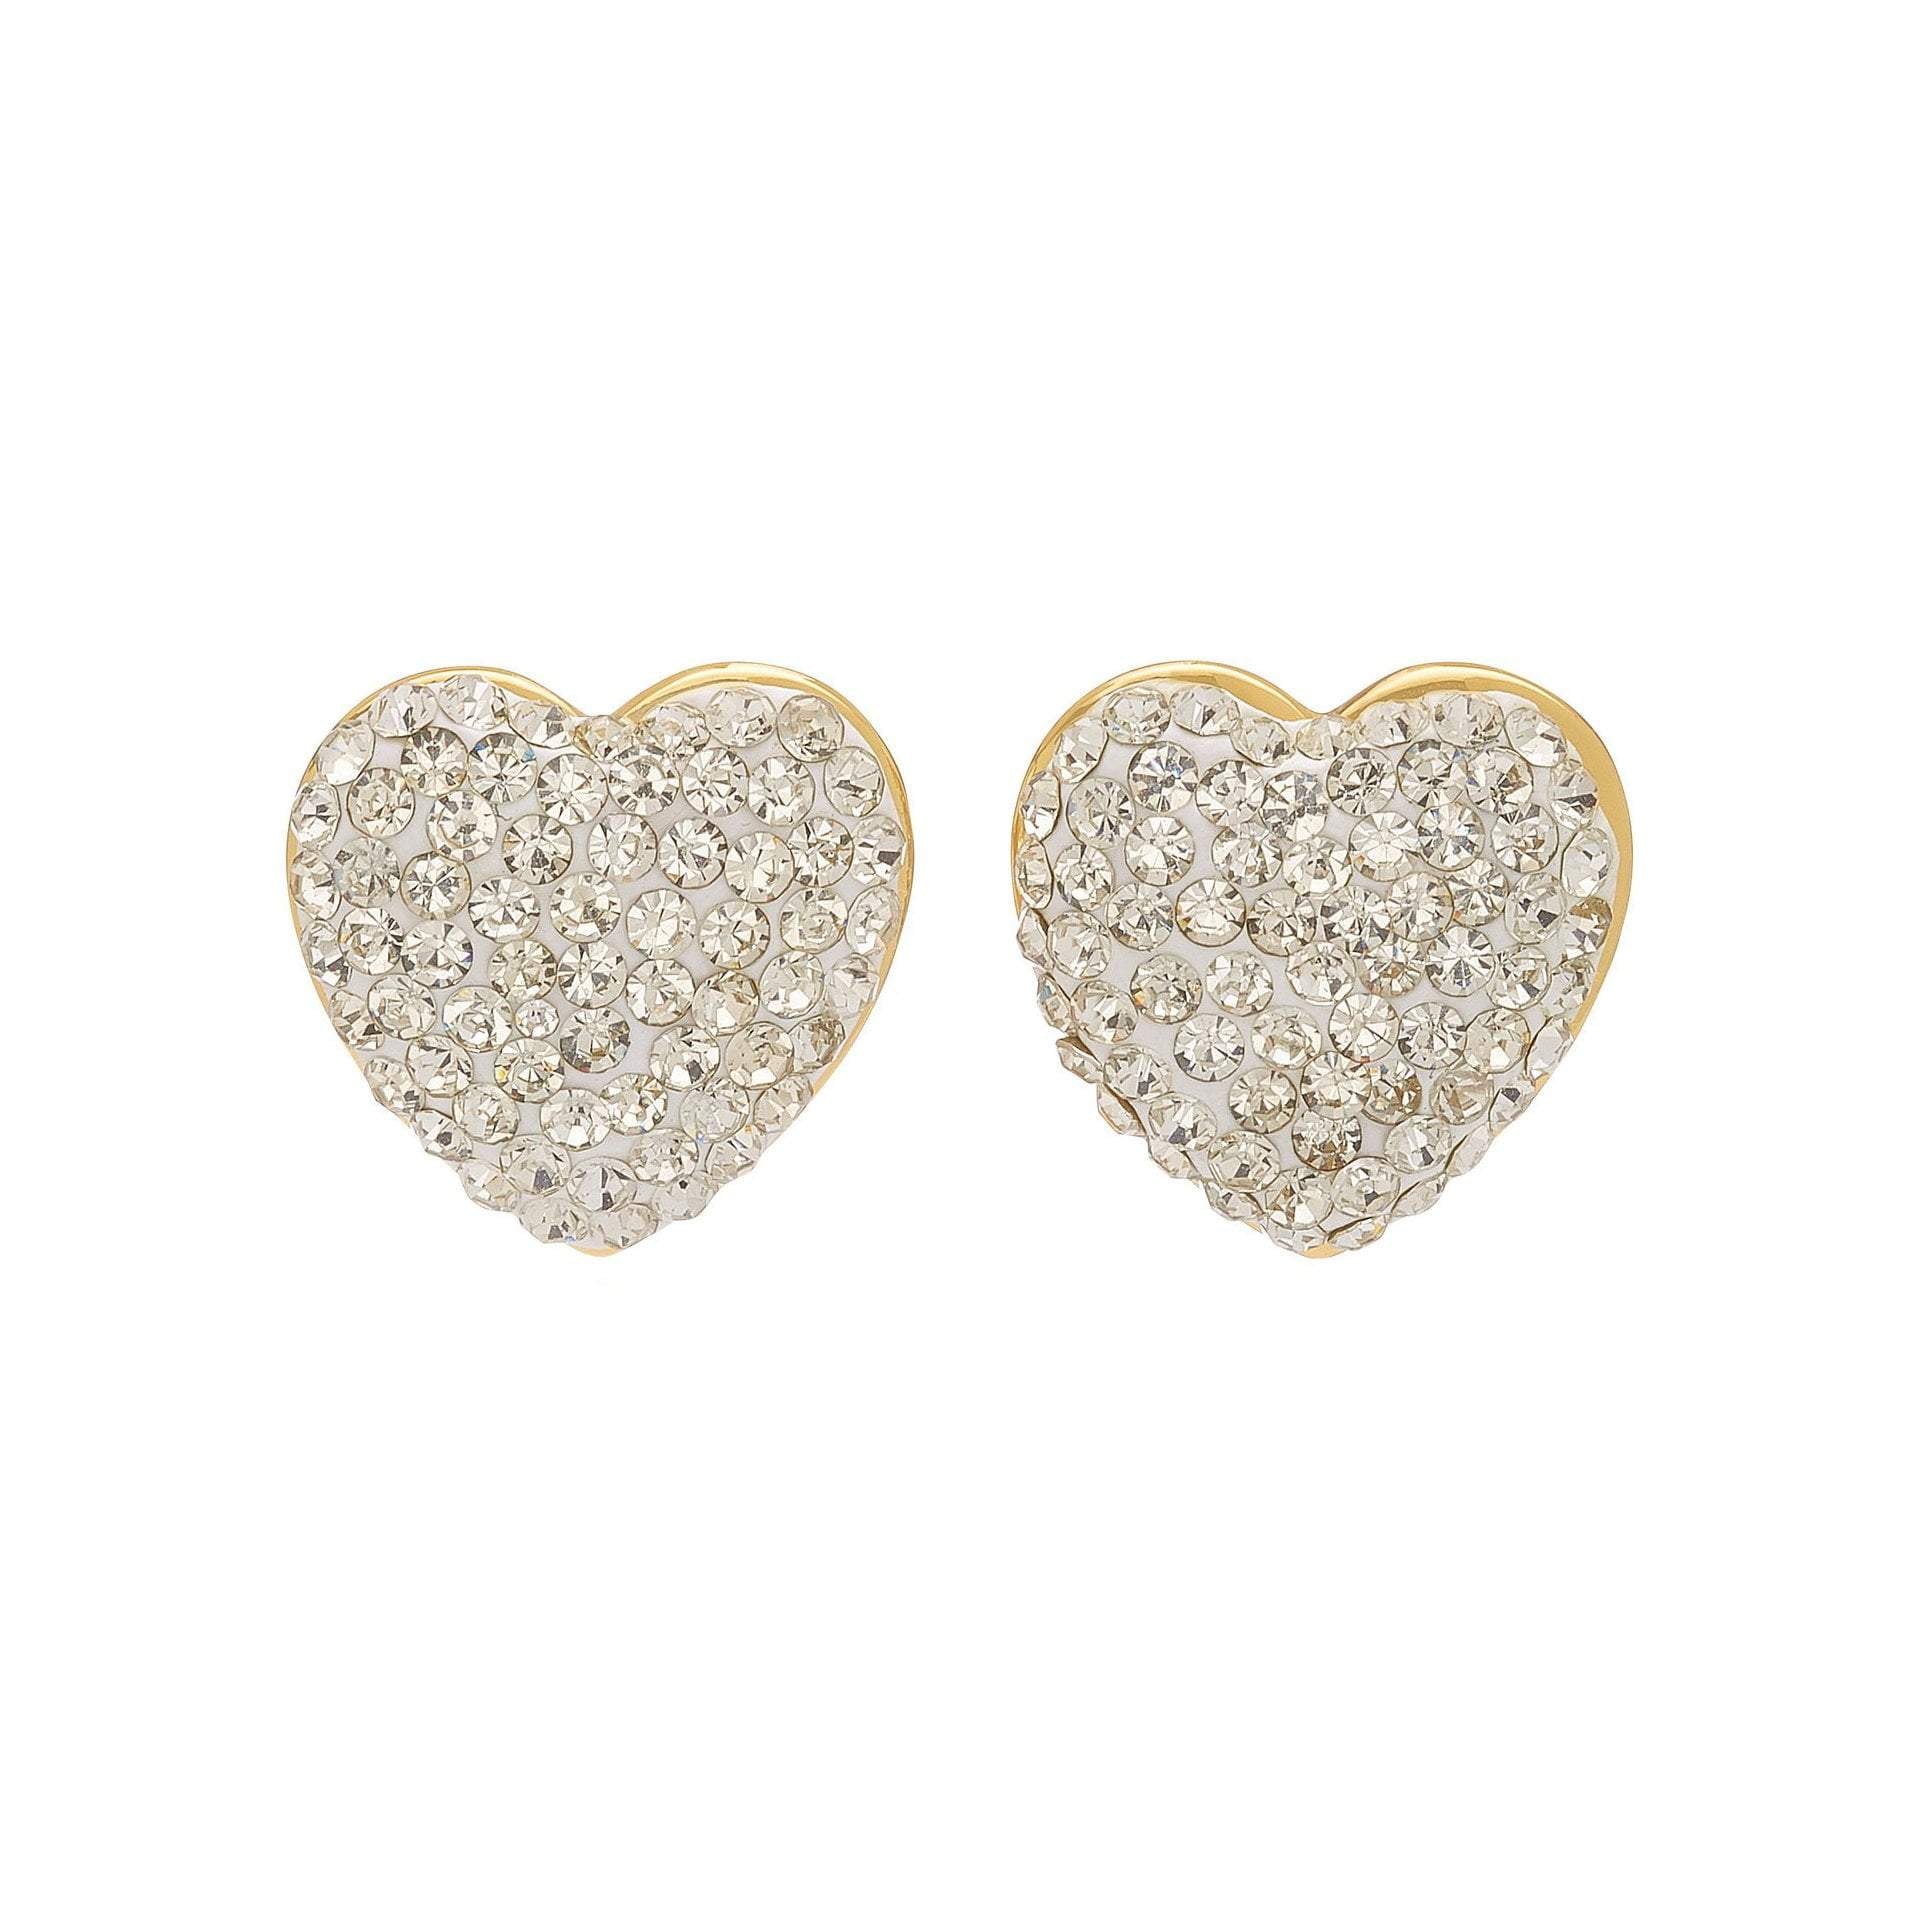 Jeweled Heart Button Earrings